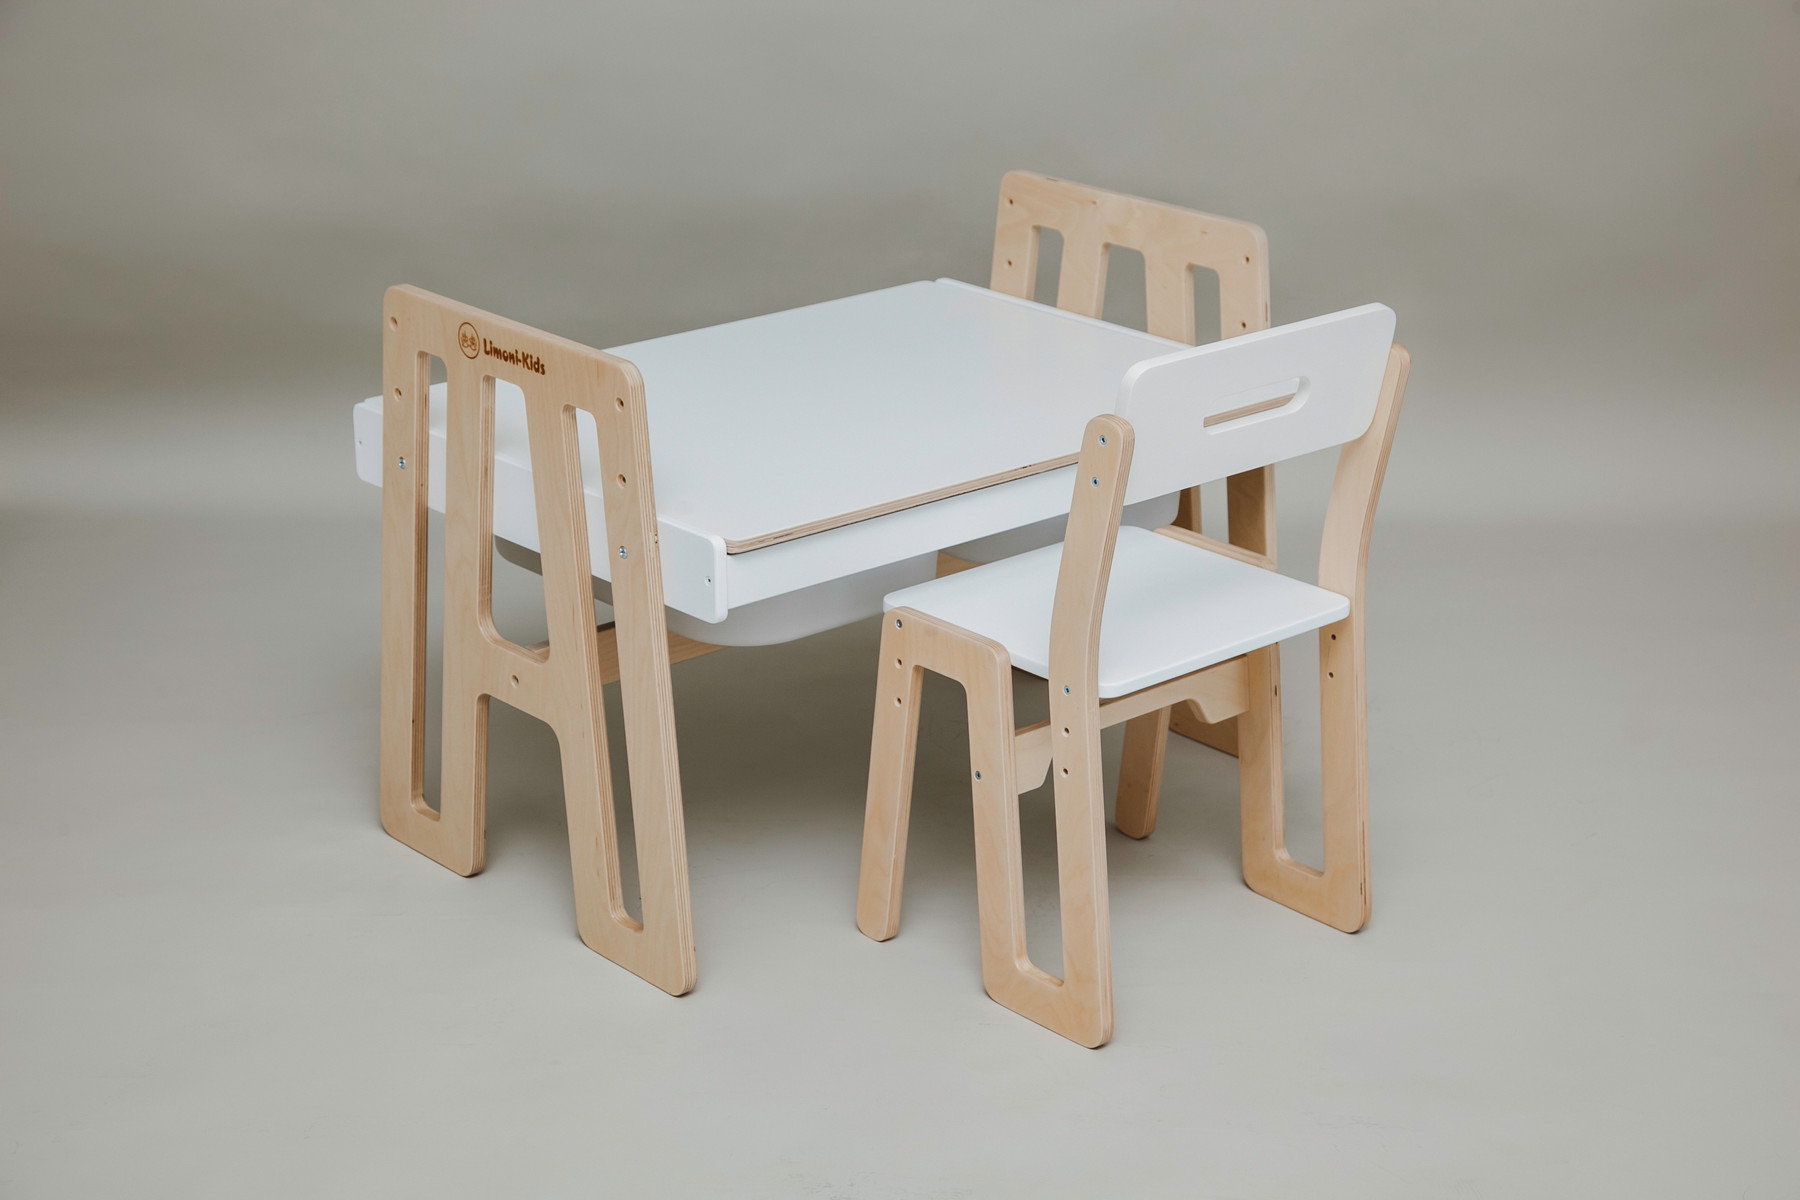 столик и стульчик для детей белый